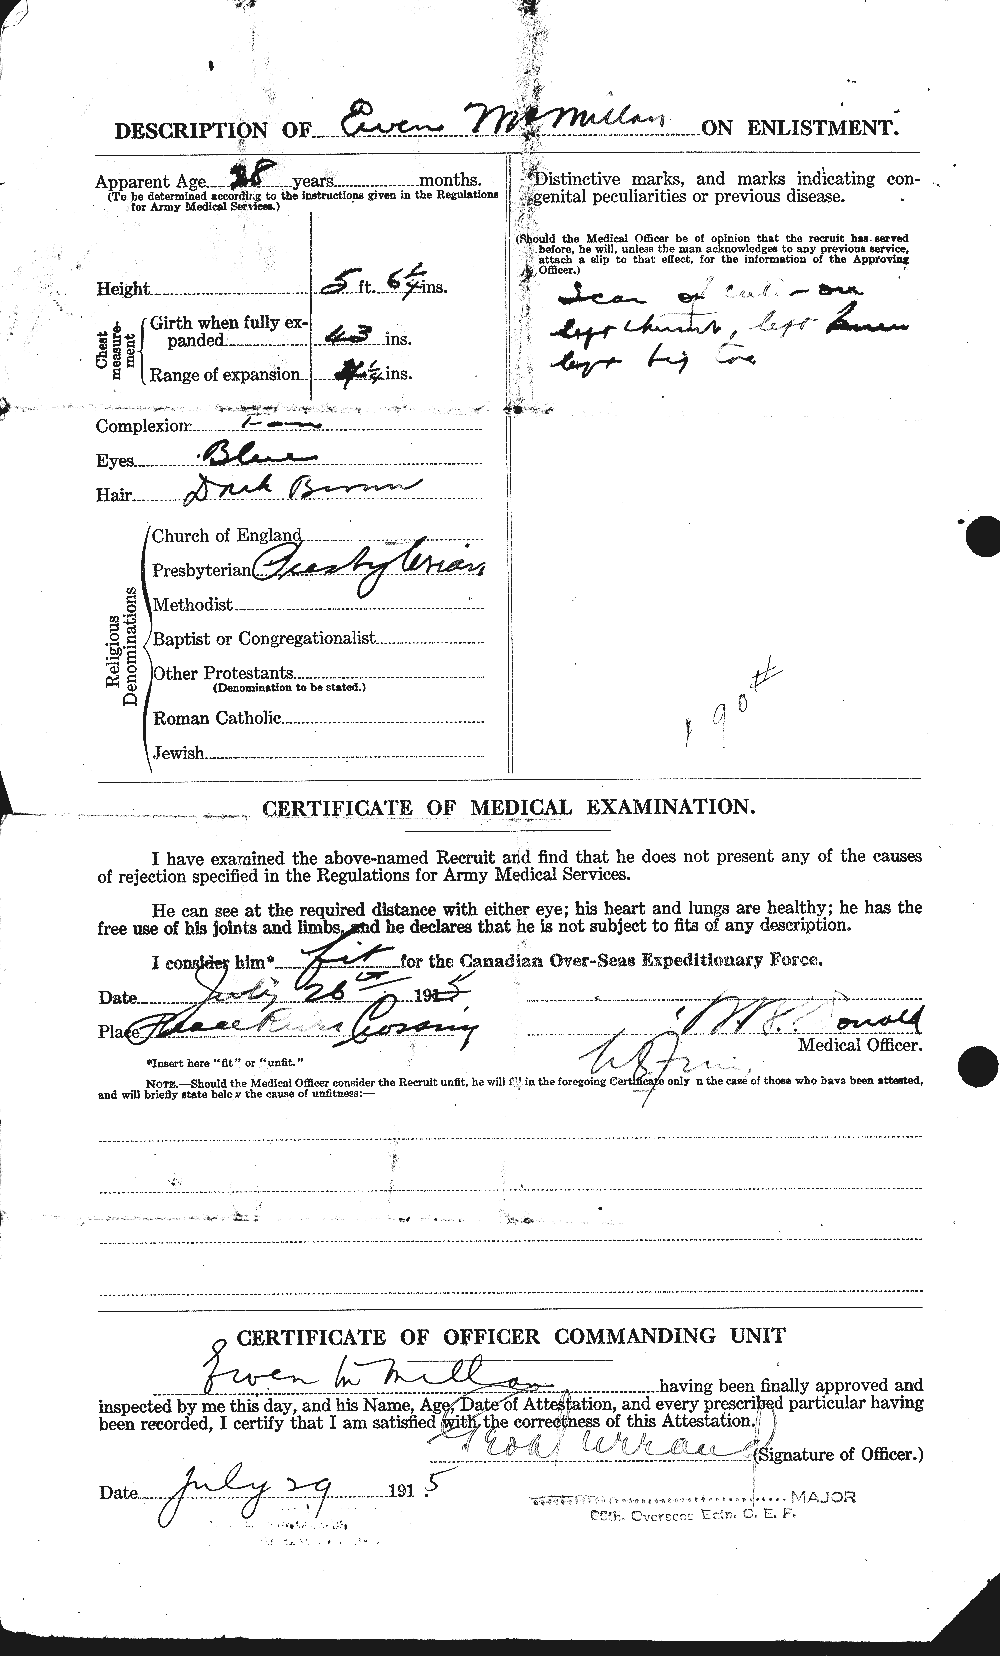 Dossiers du Personnel de la Première Guerre mondiale - CEC 537687b